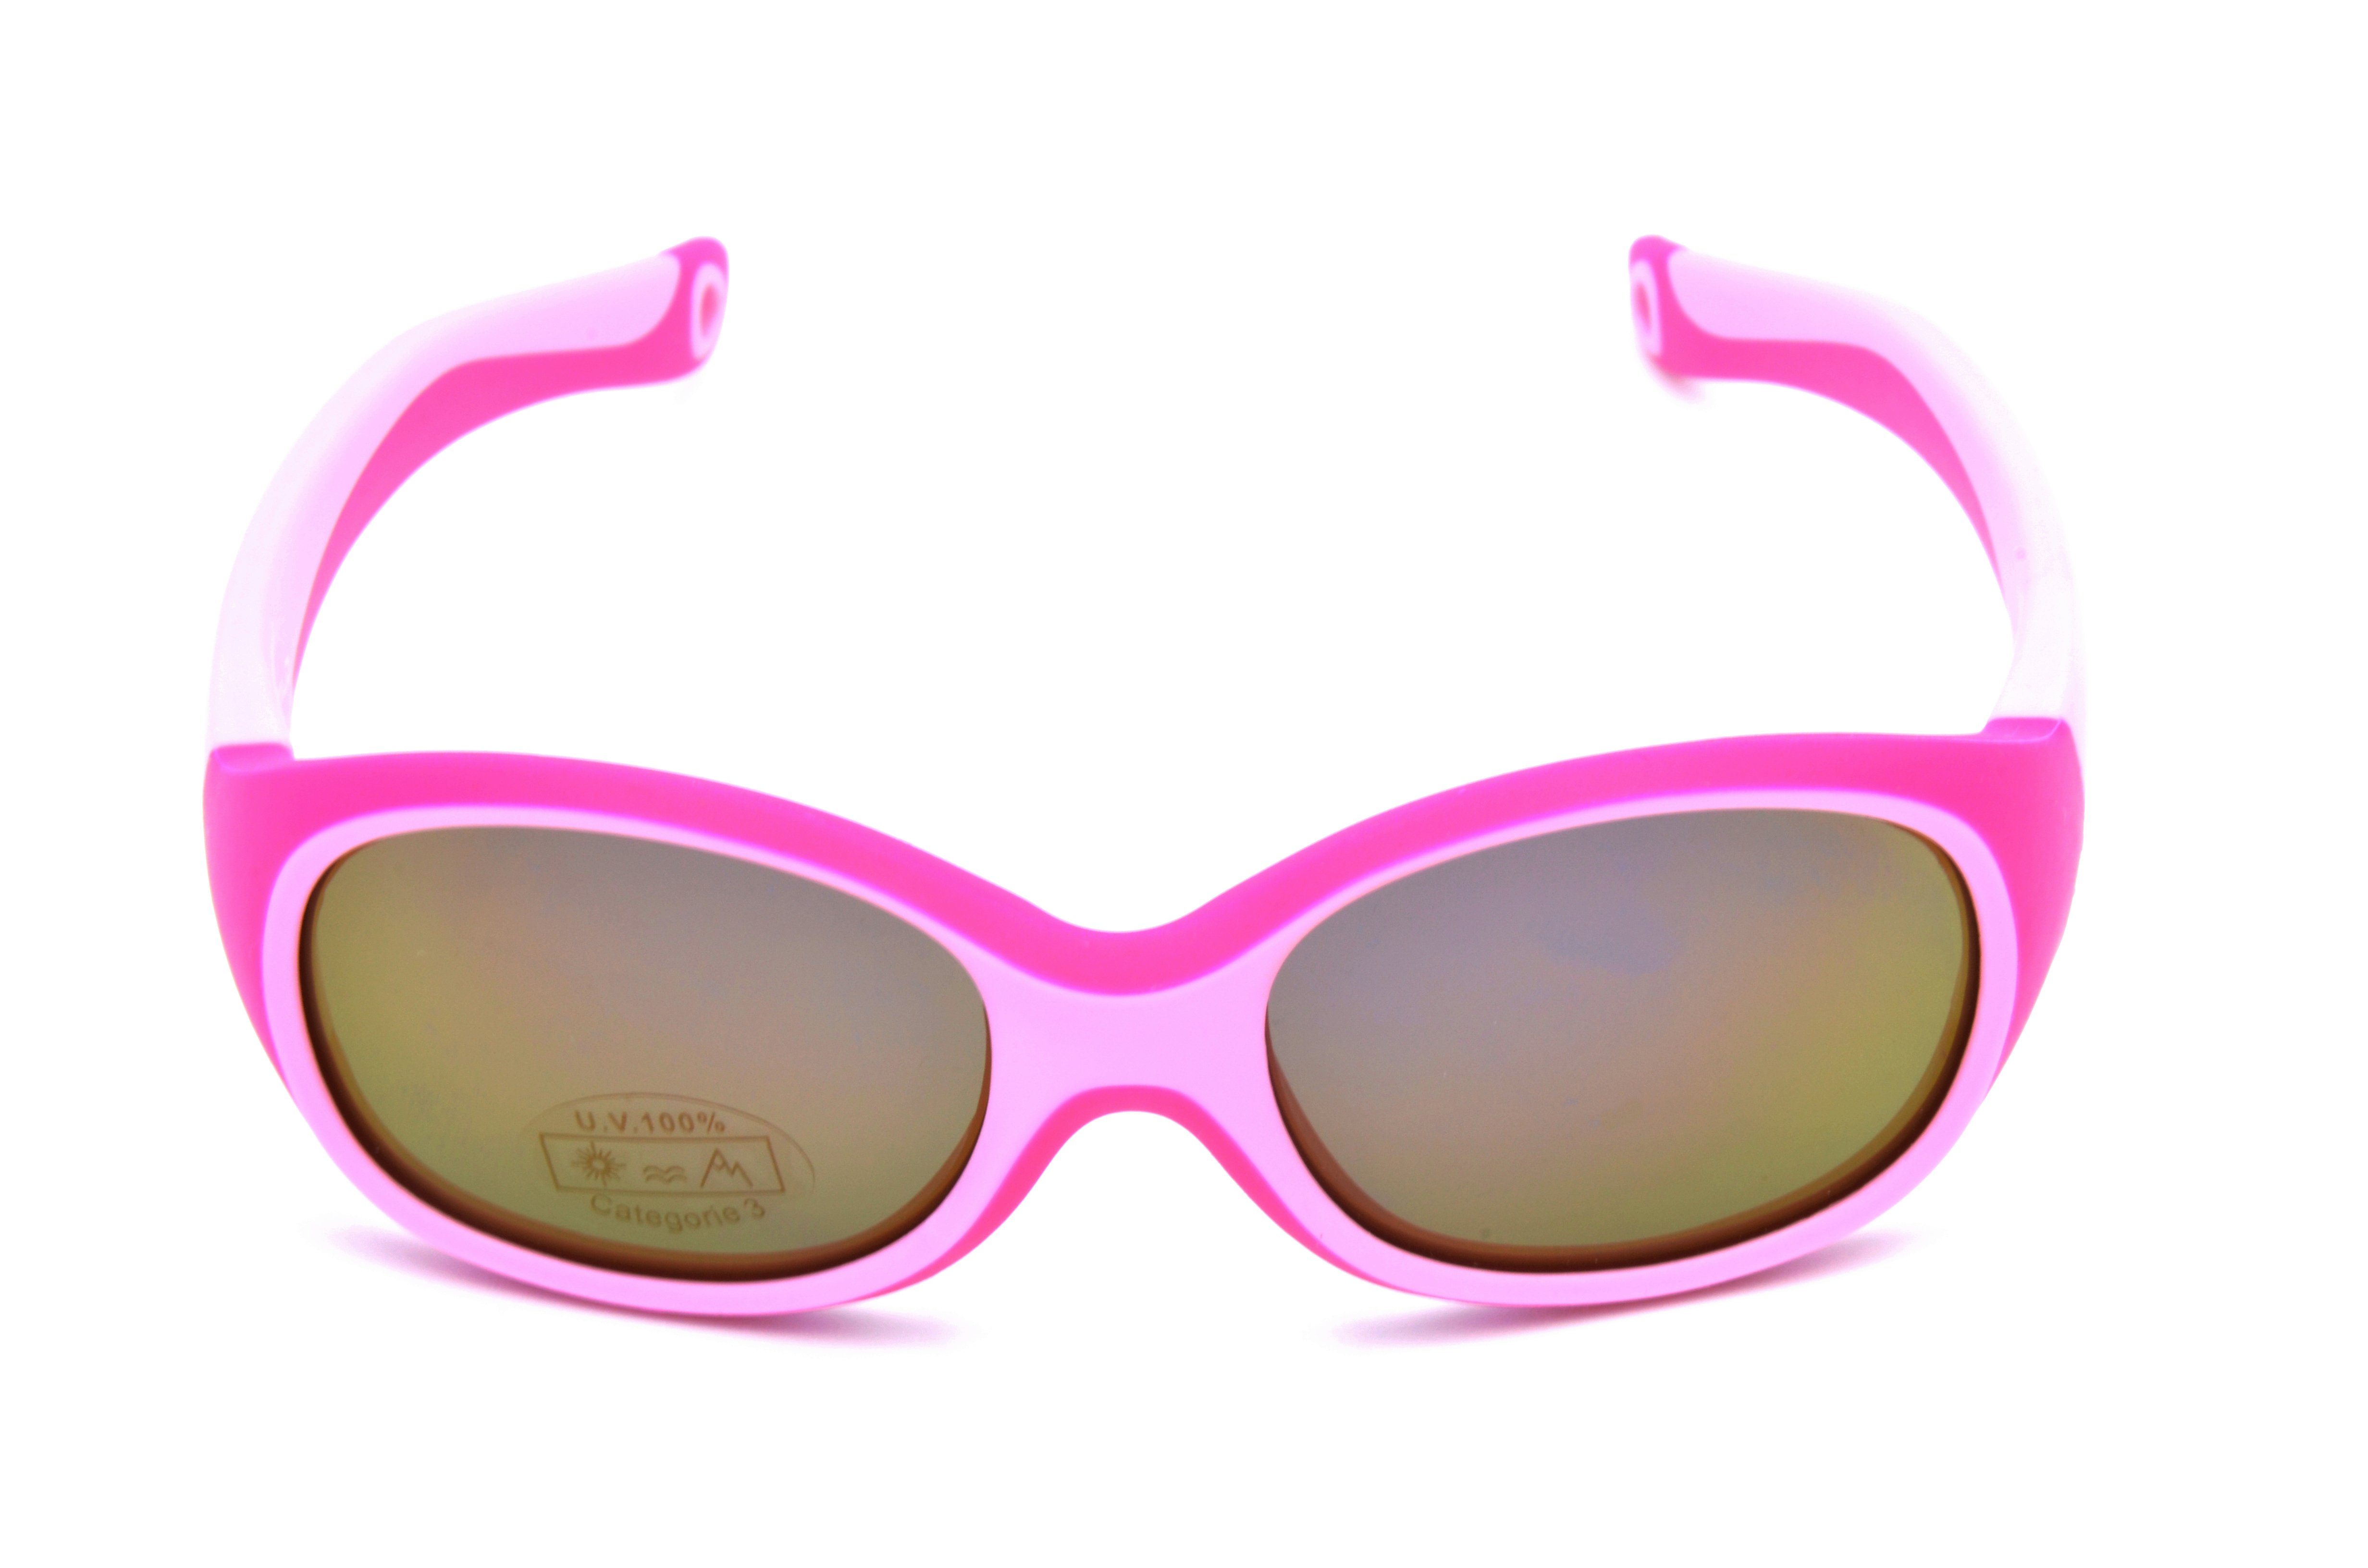 Gamswild Sonnenbrille WK5121 kids Unisex, Mädchen grün, Kinderbrille Jahre 3-6 Jungen GAMSKIDS blau, rosa Kleinkindbrille